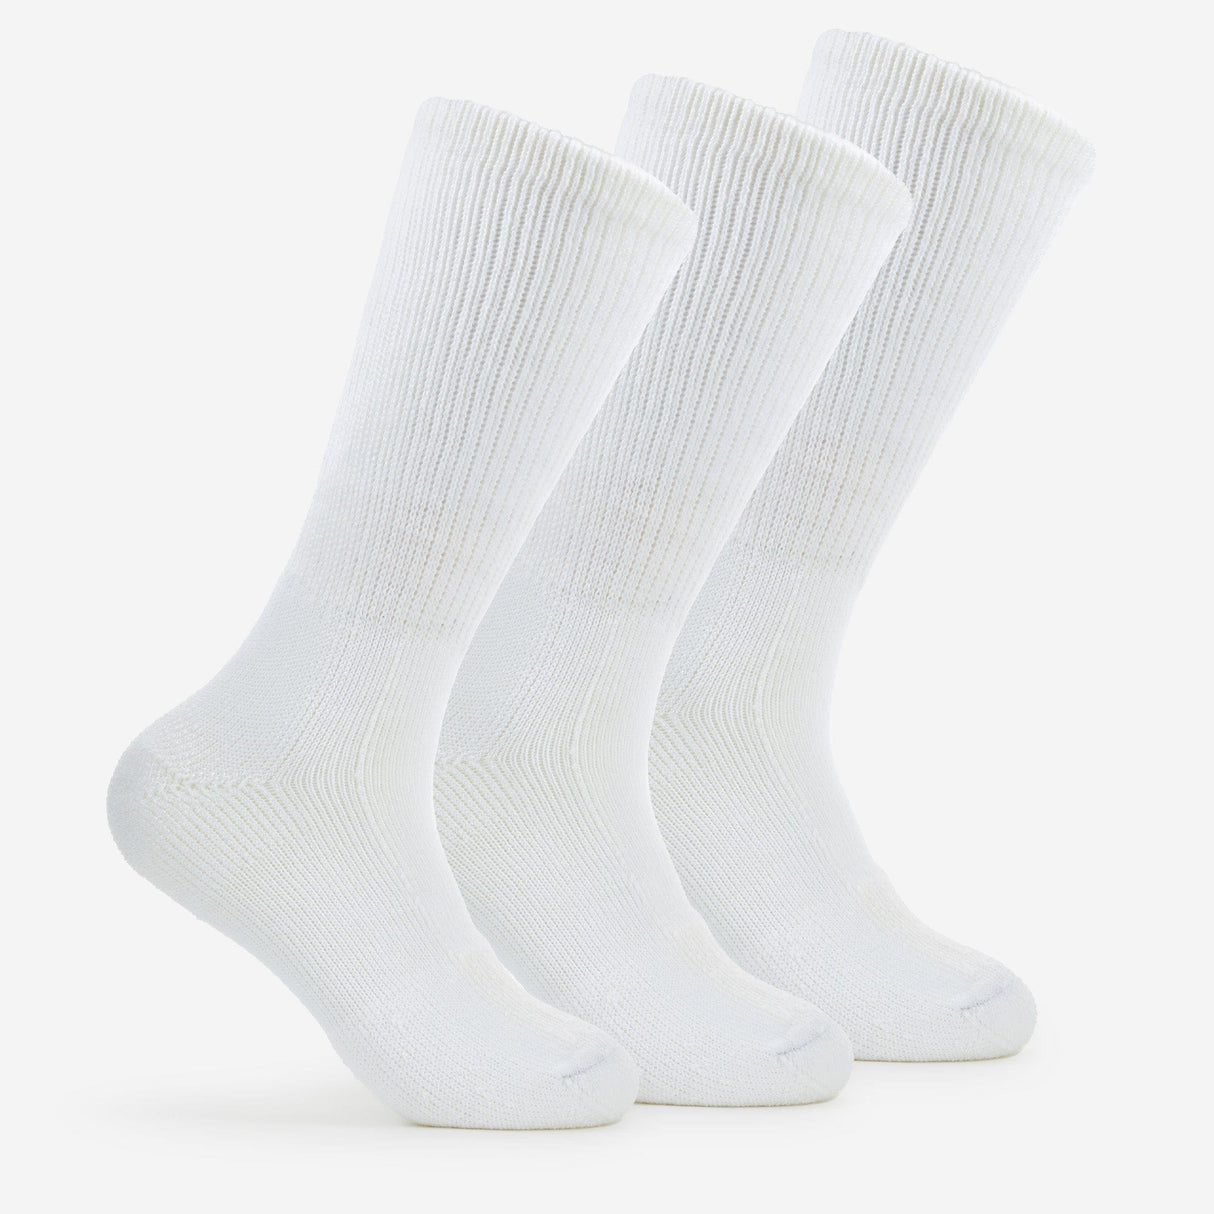 Thorlo Walking Moderate Cushion Crew Socks  -  Medium / White / 3-Pair Pack